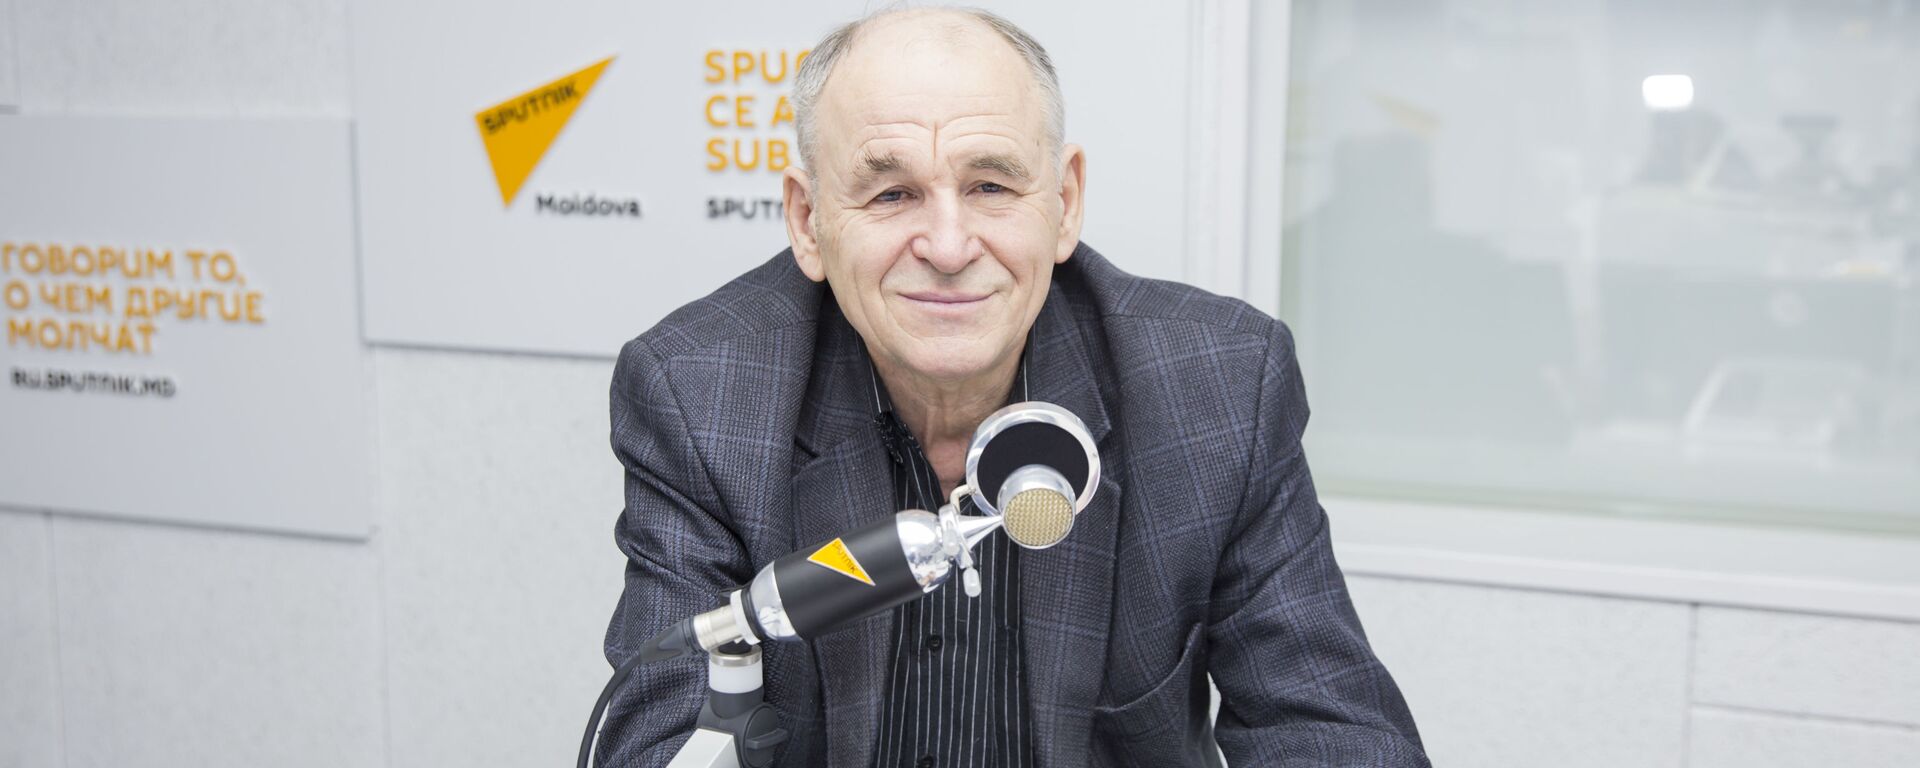 Vlad Sainciuc - Sputnik Moldova, 1920, 11.03.2019